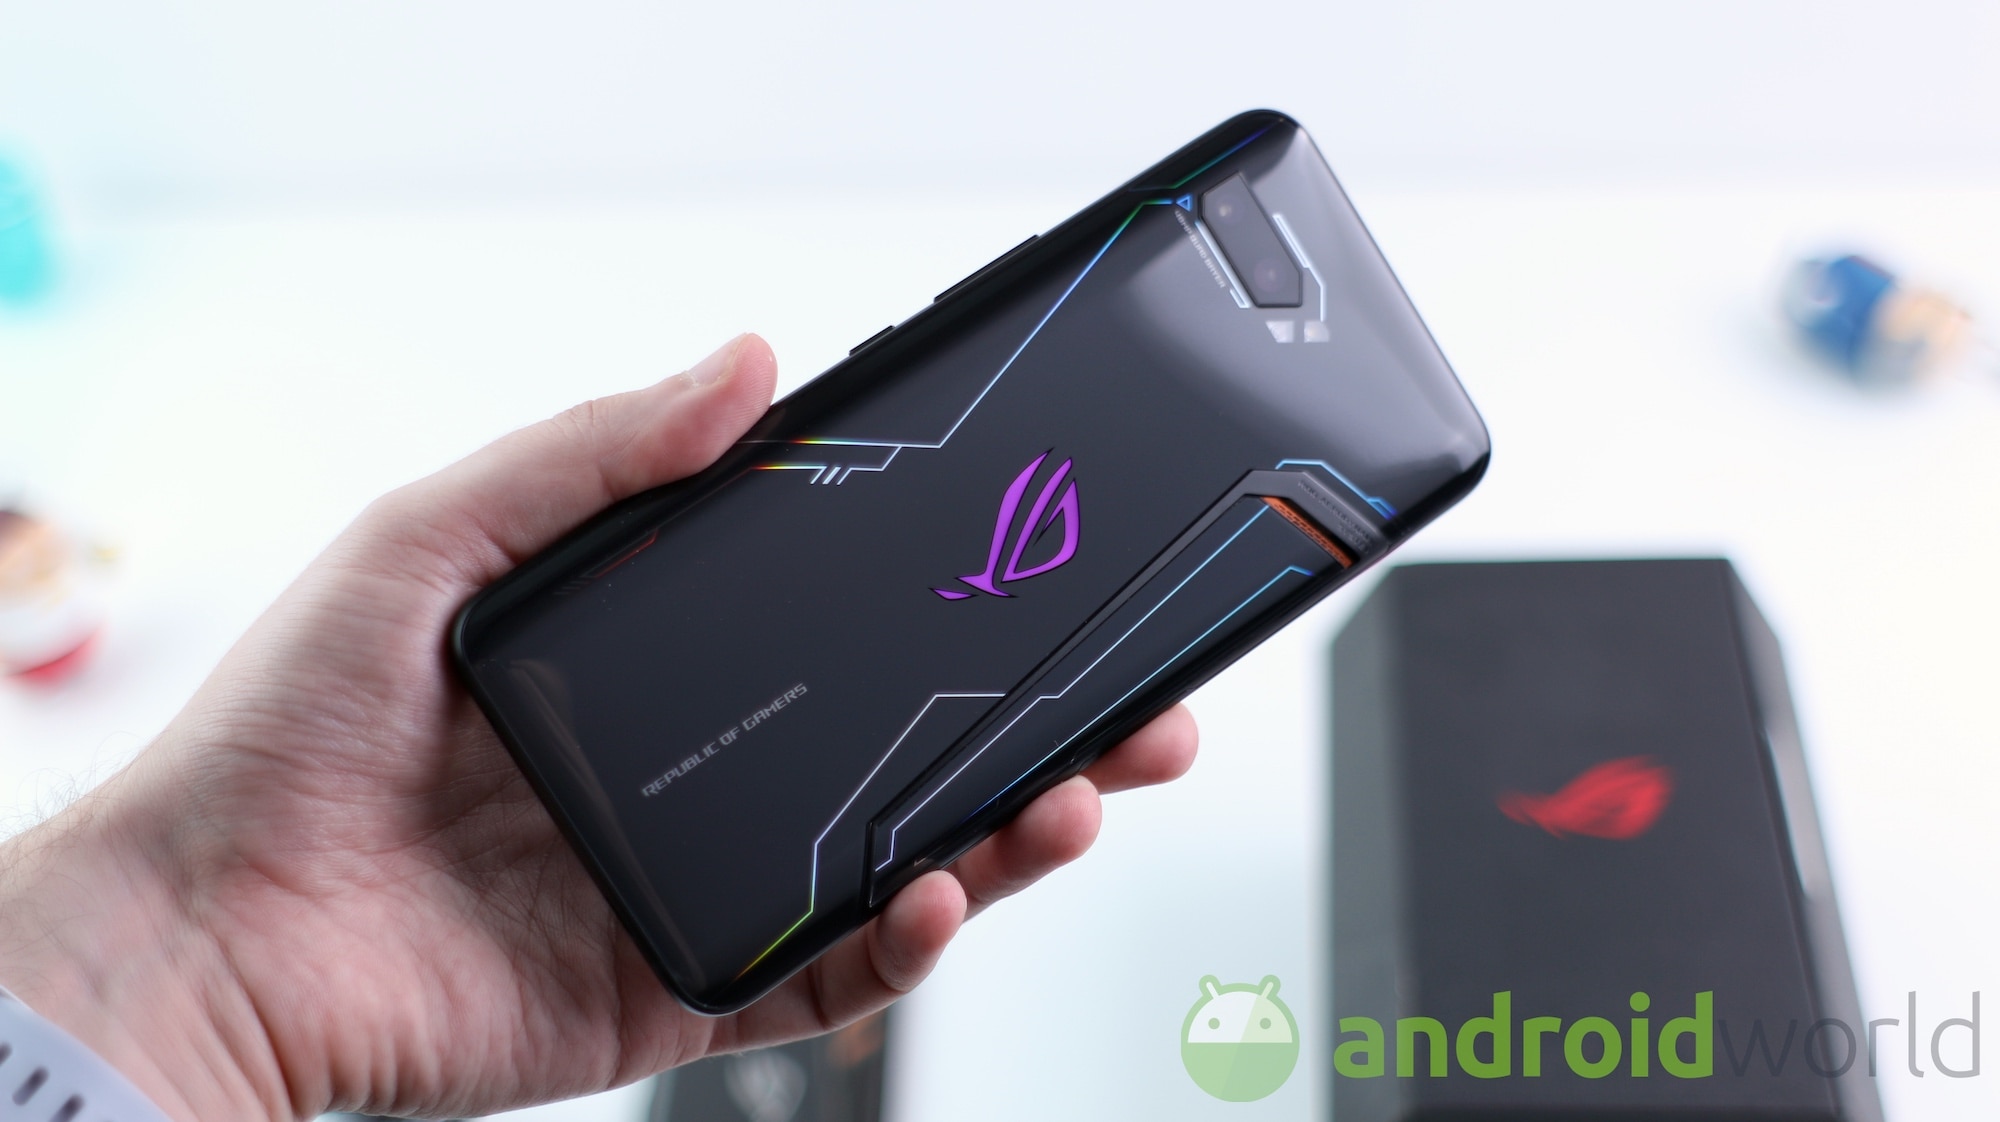 ASUS ROG Phone III farà la voce grossa: in arrivo nel terzo trimestre con Snapdragon 865+?